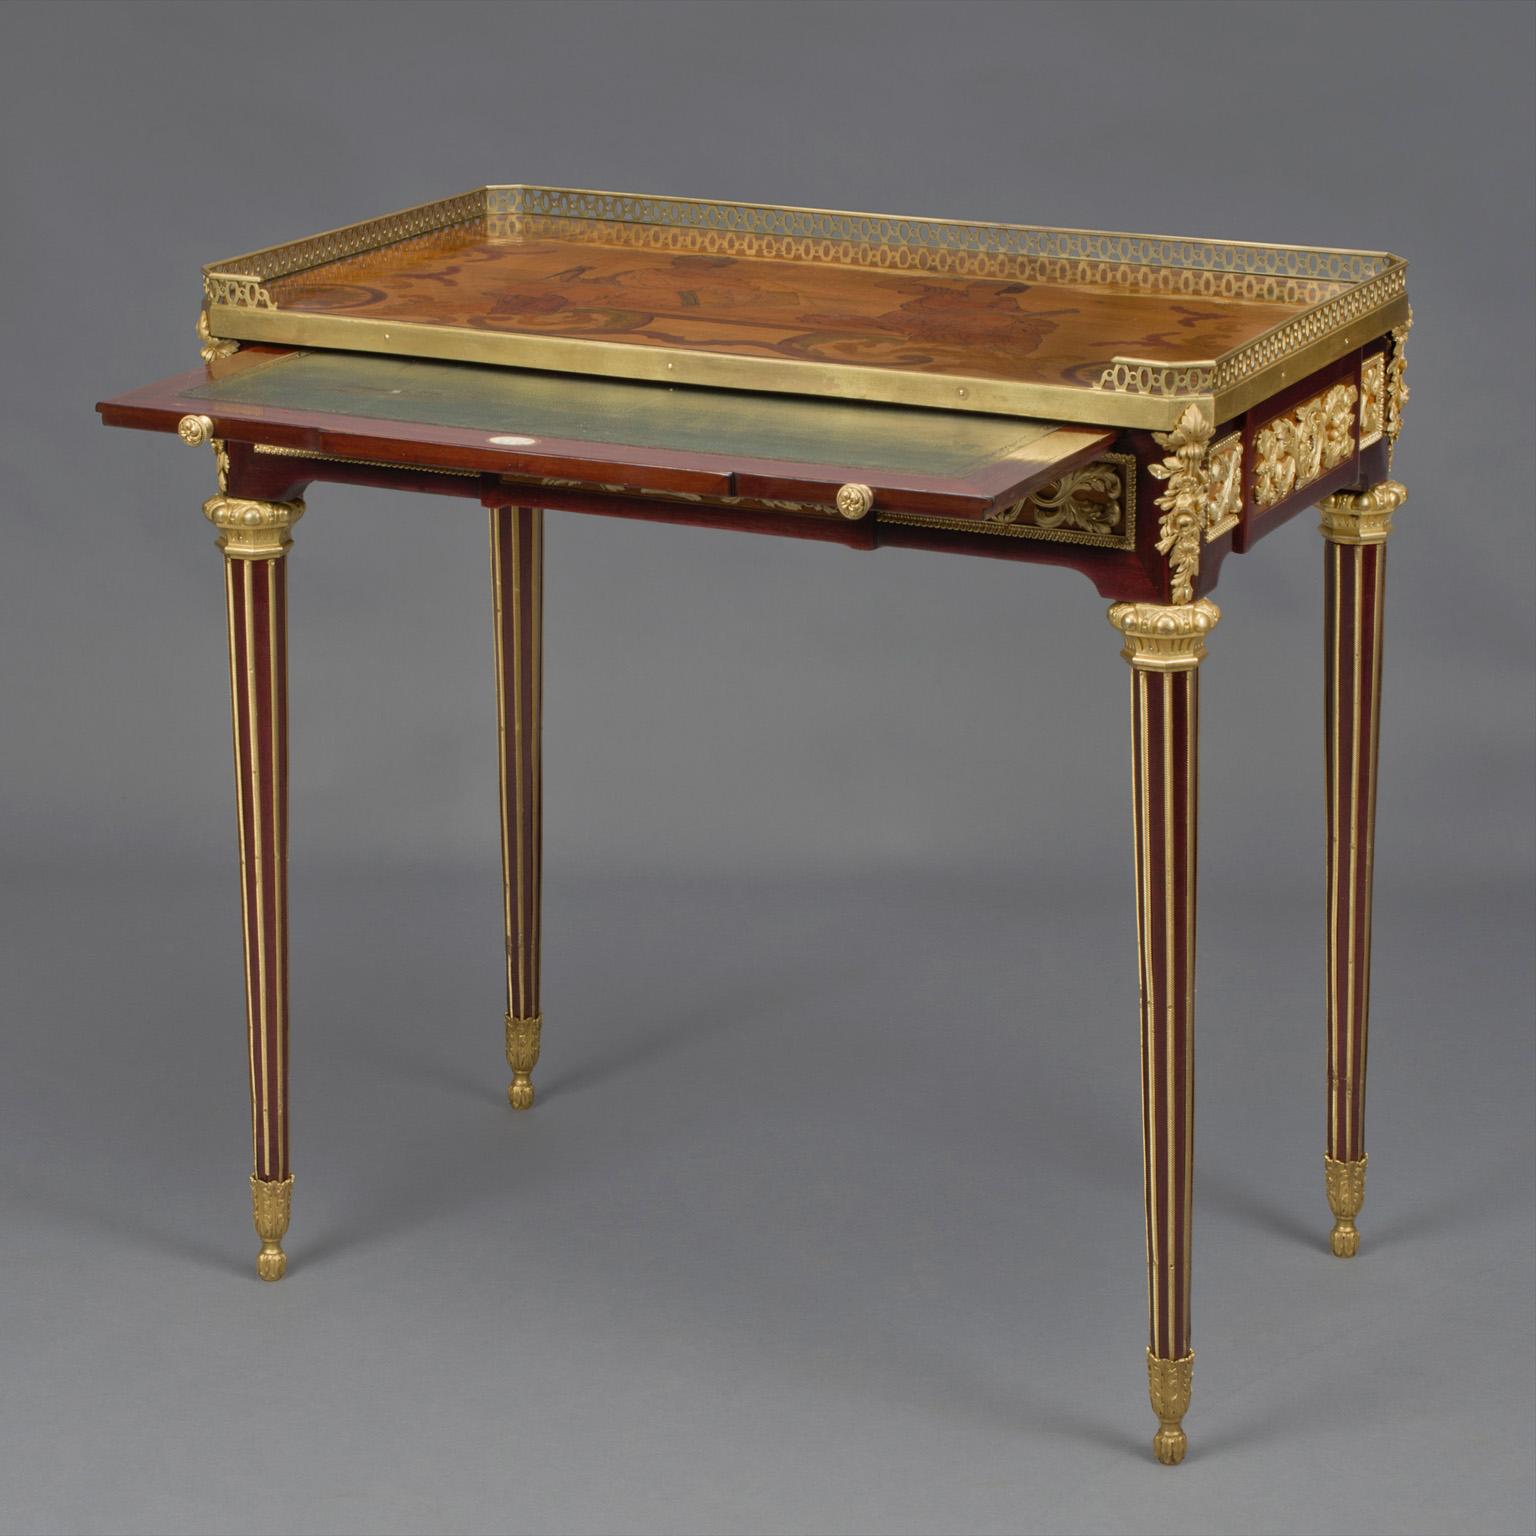 Table à écrire de style Louis XVI en acajou et marqueterie de bronze doré d'après le modèle de Jean-Henri Riesener.

Cette table d'écriture finement marquetée s'inspire de la célèbre 